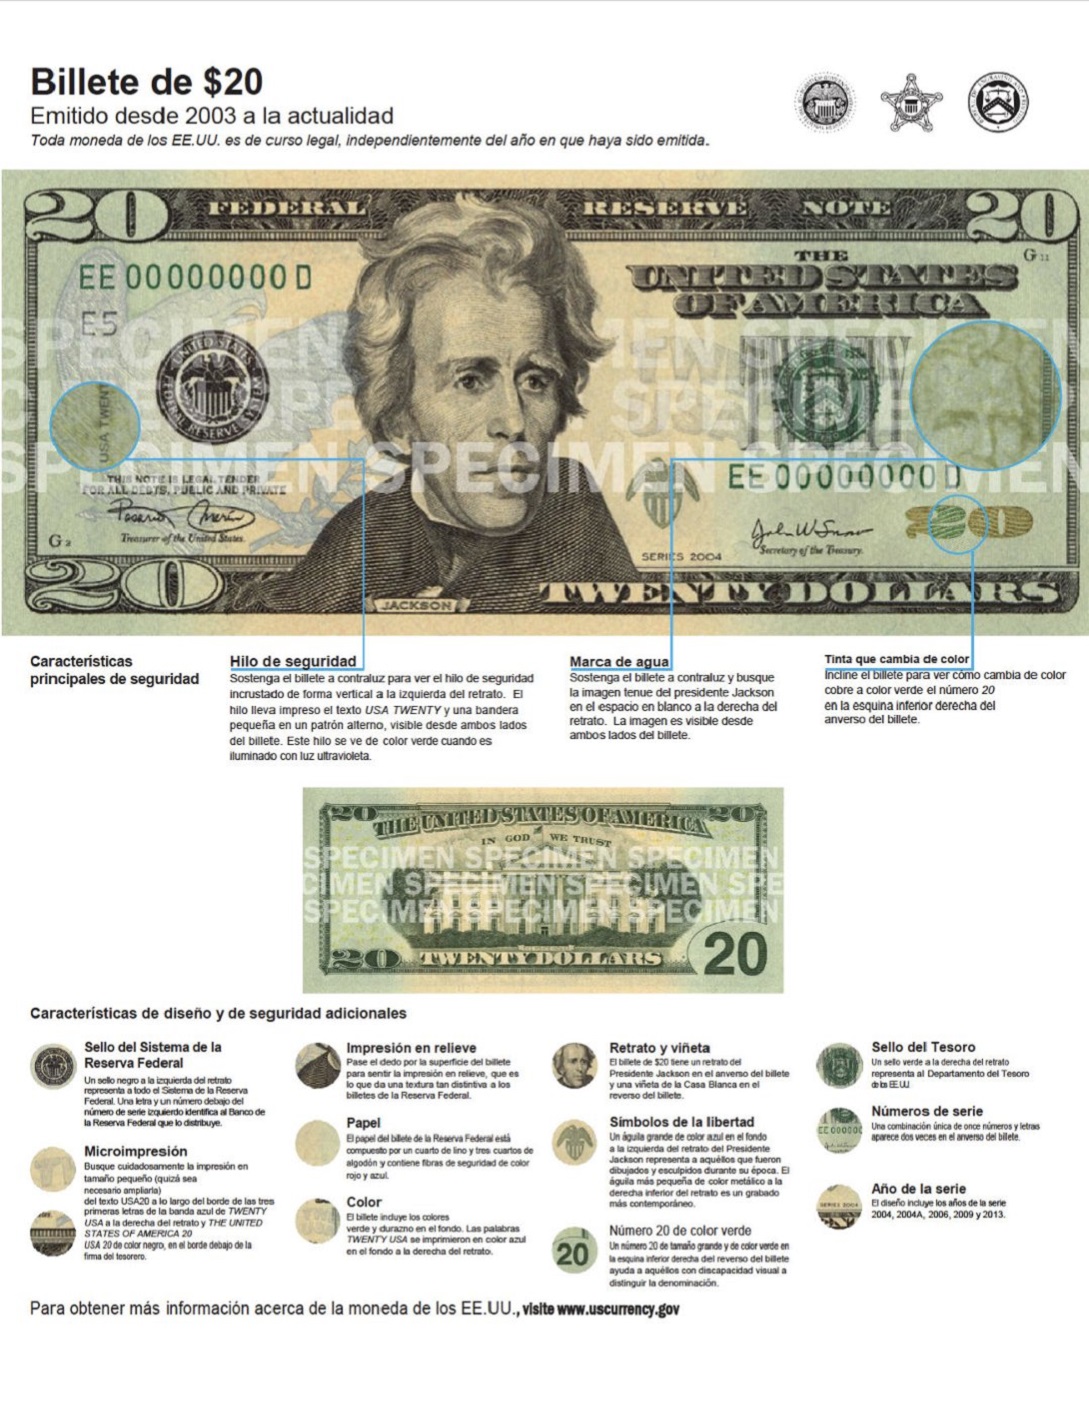 Advierten de presunta circulación de billetes de 20 dólares falsos